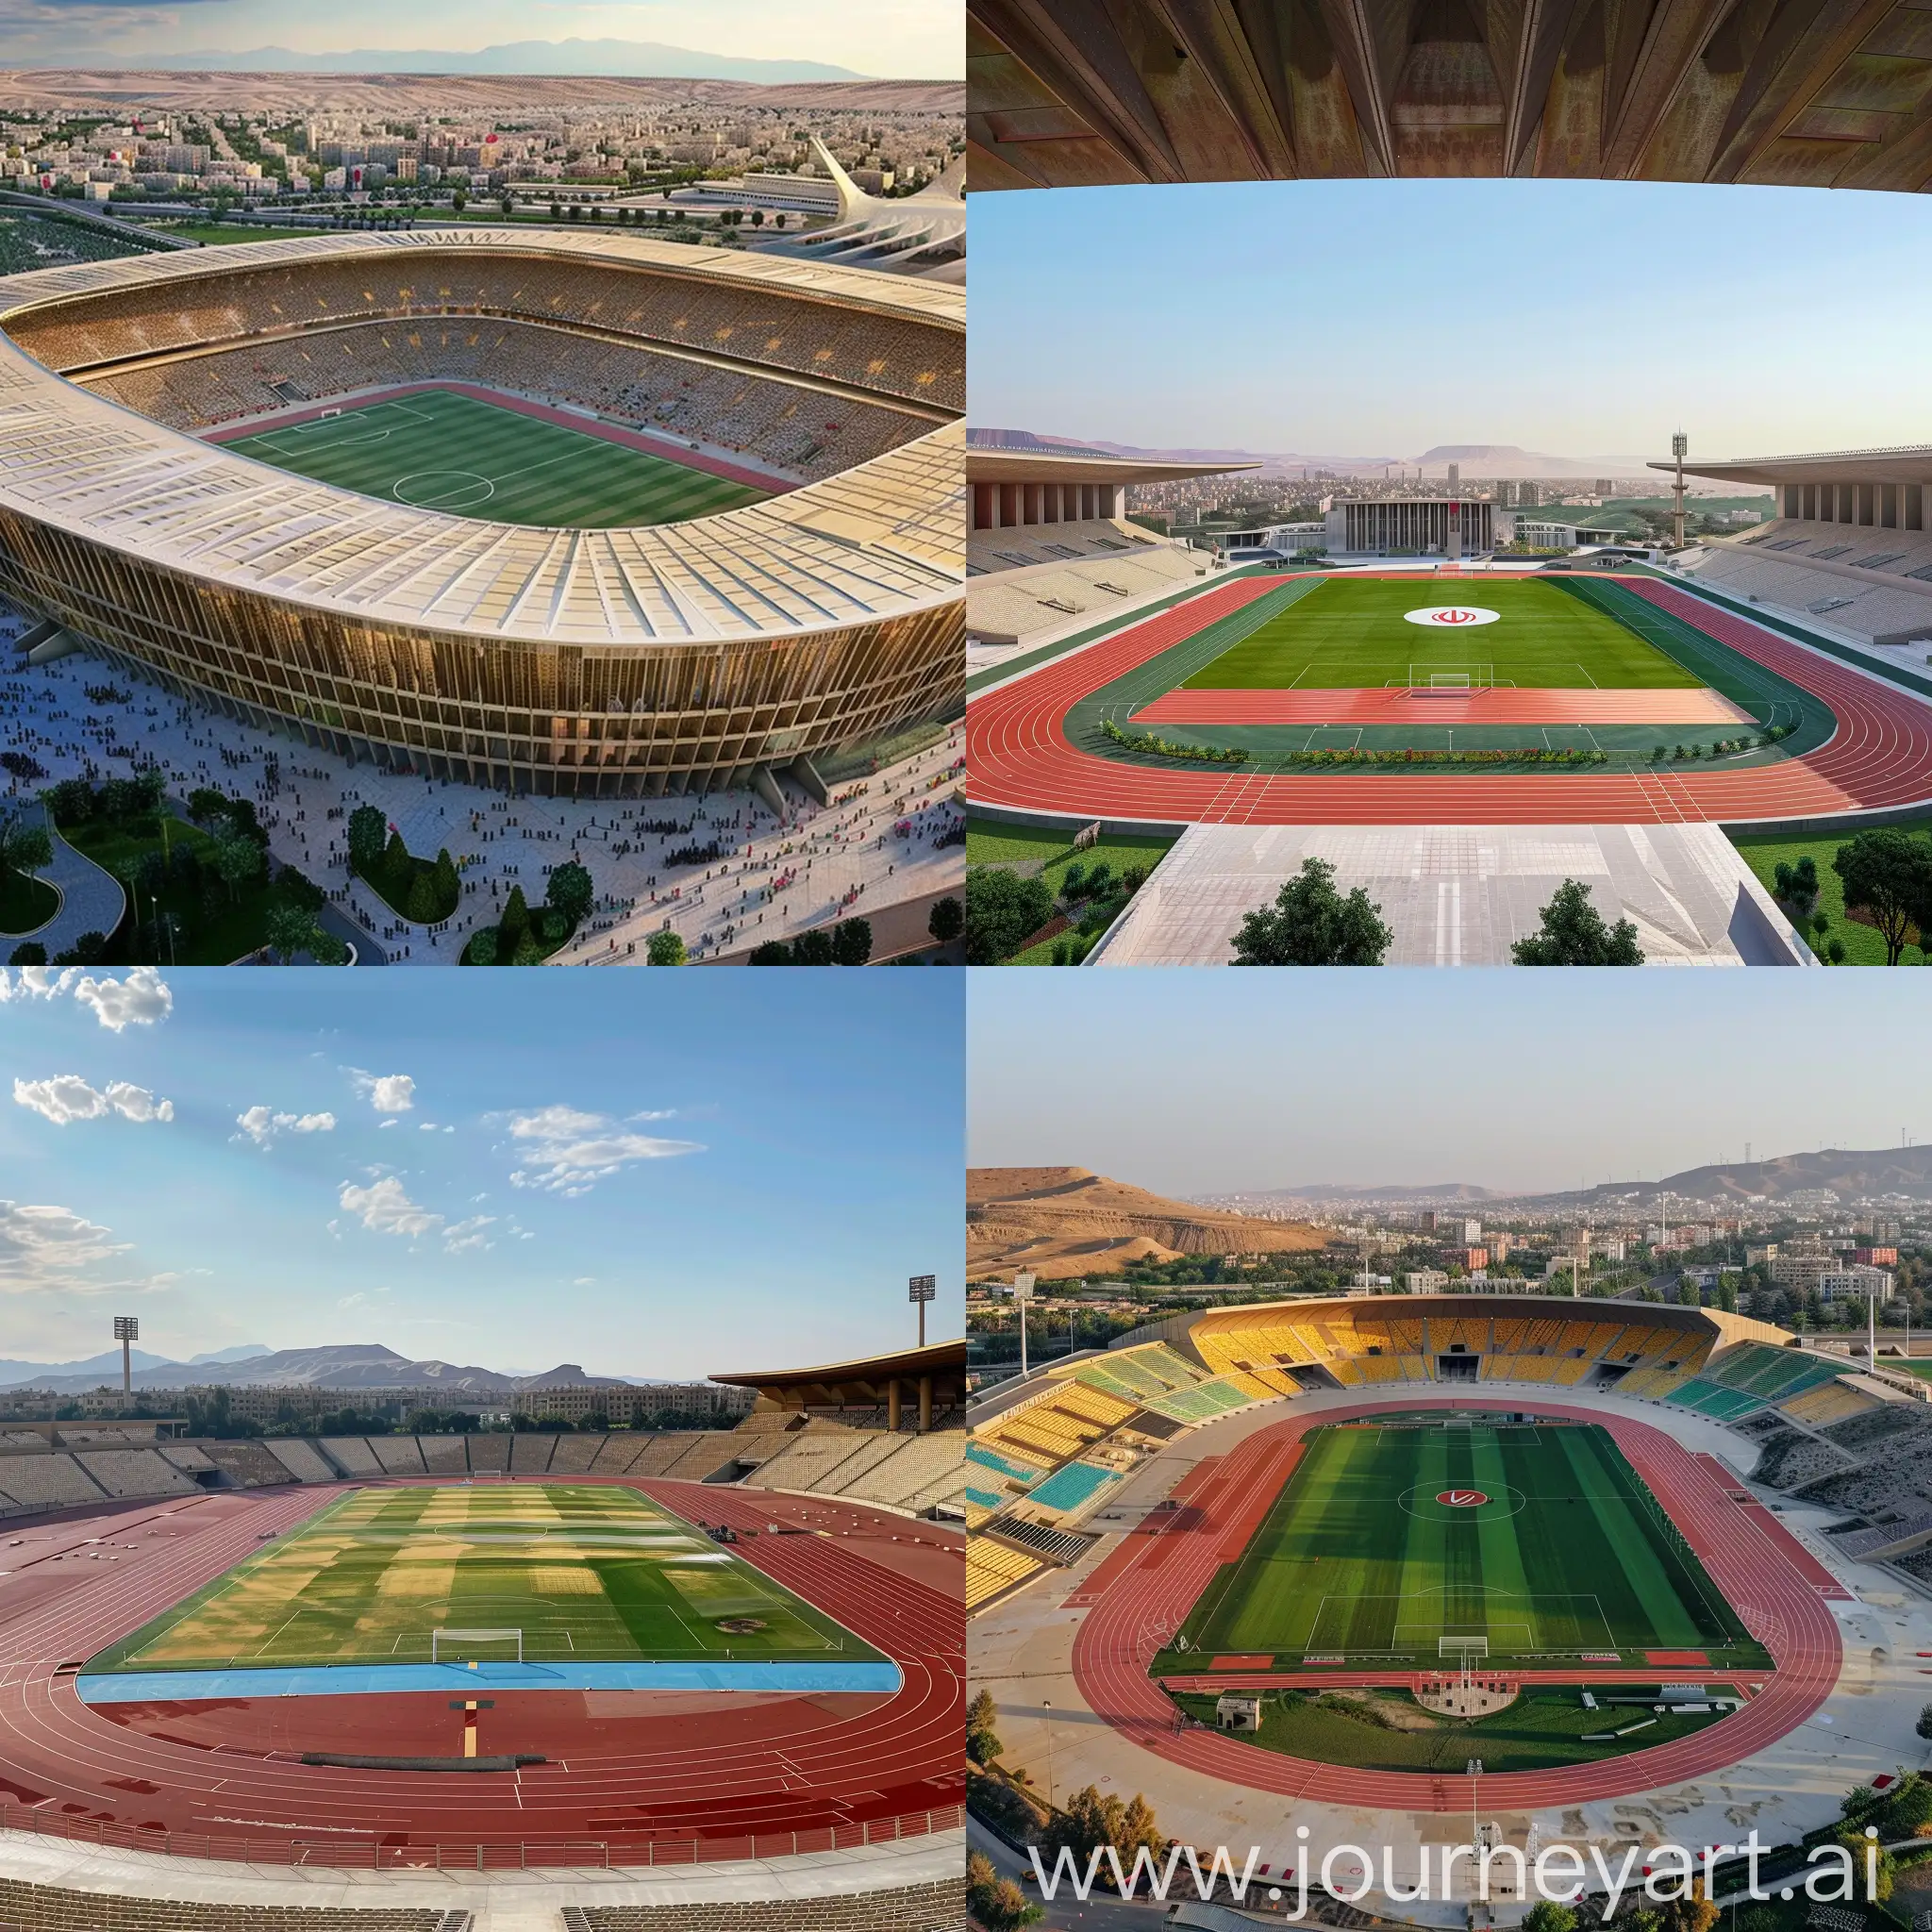 Iran's Persepolis Stadium in 2030